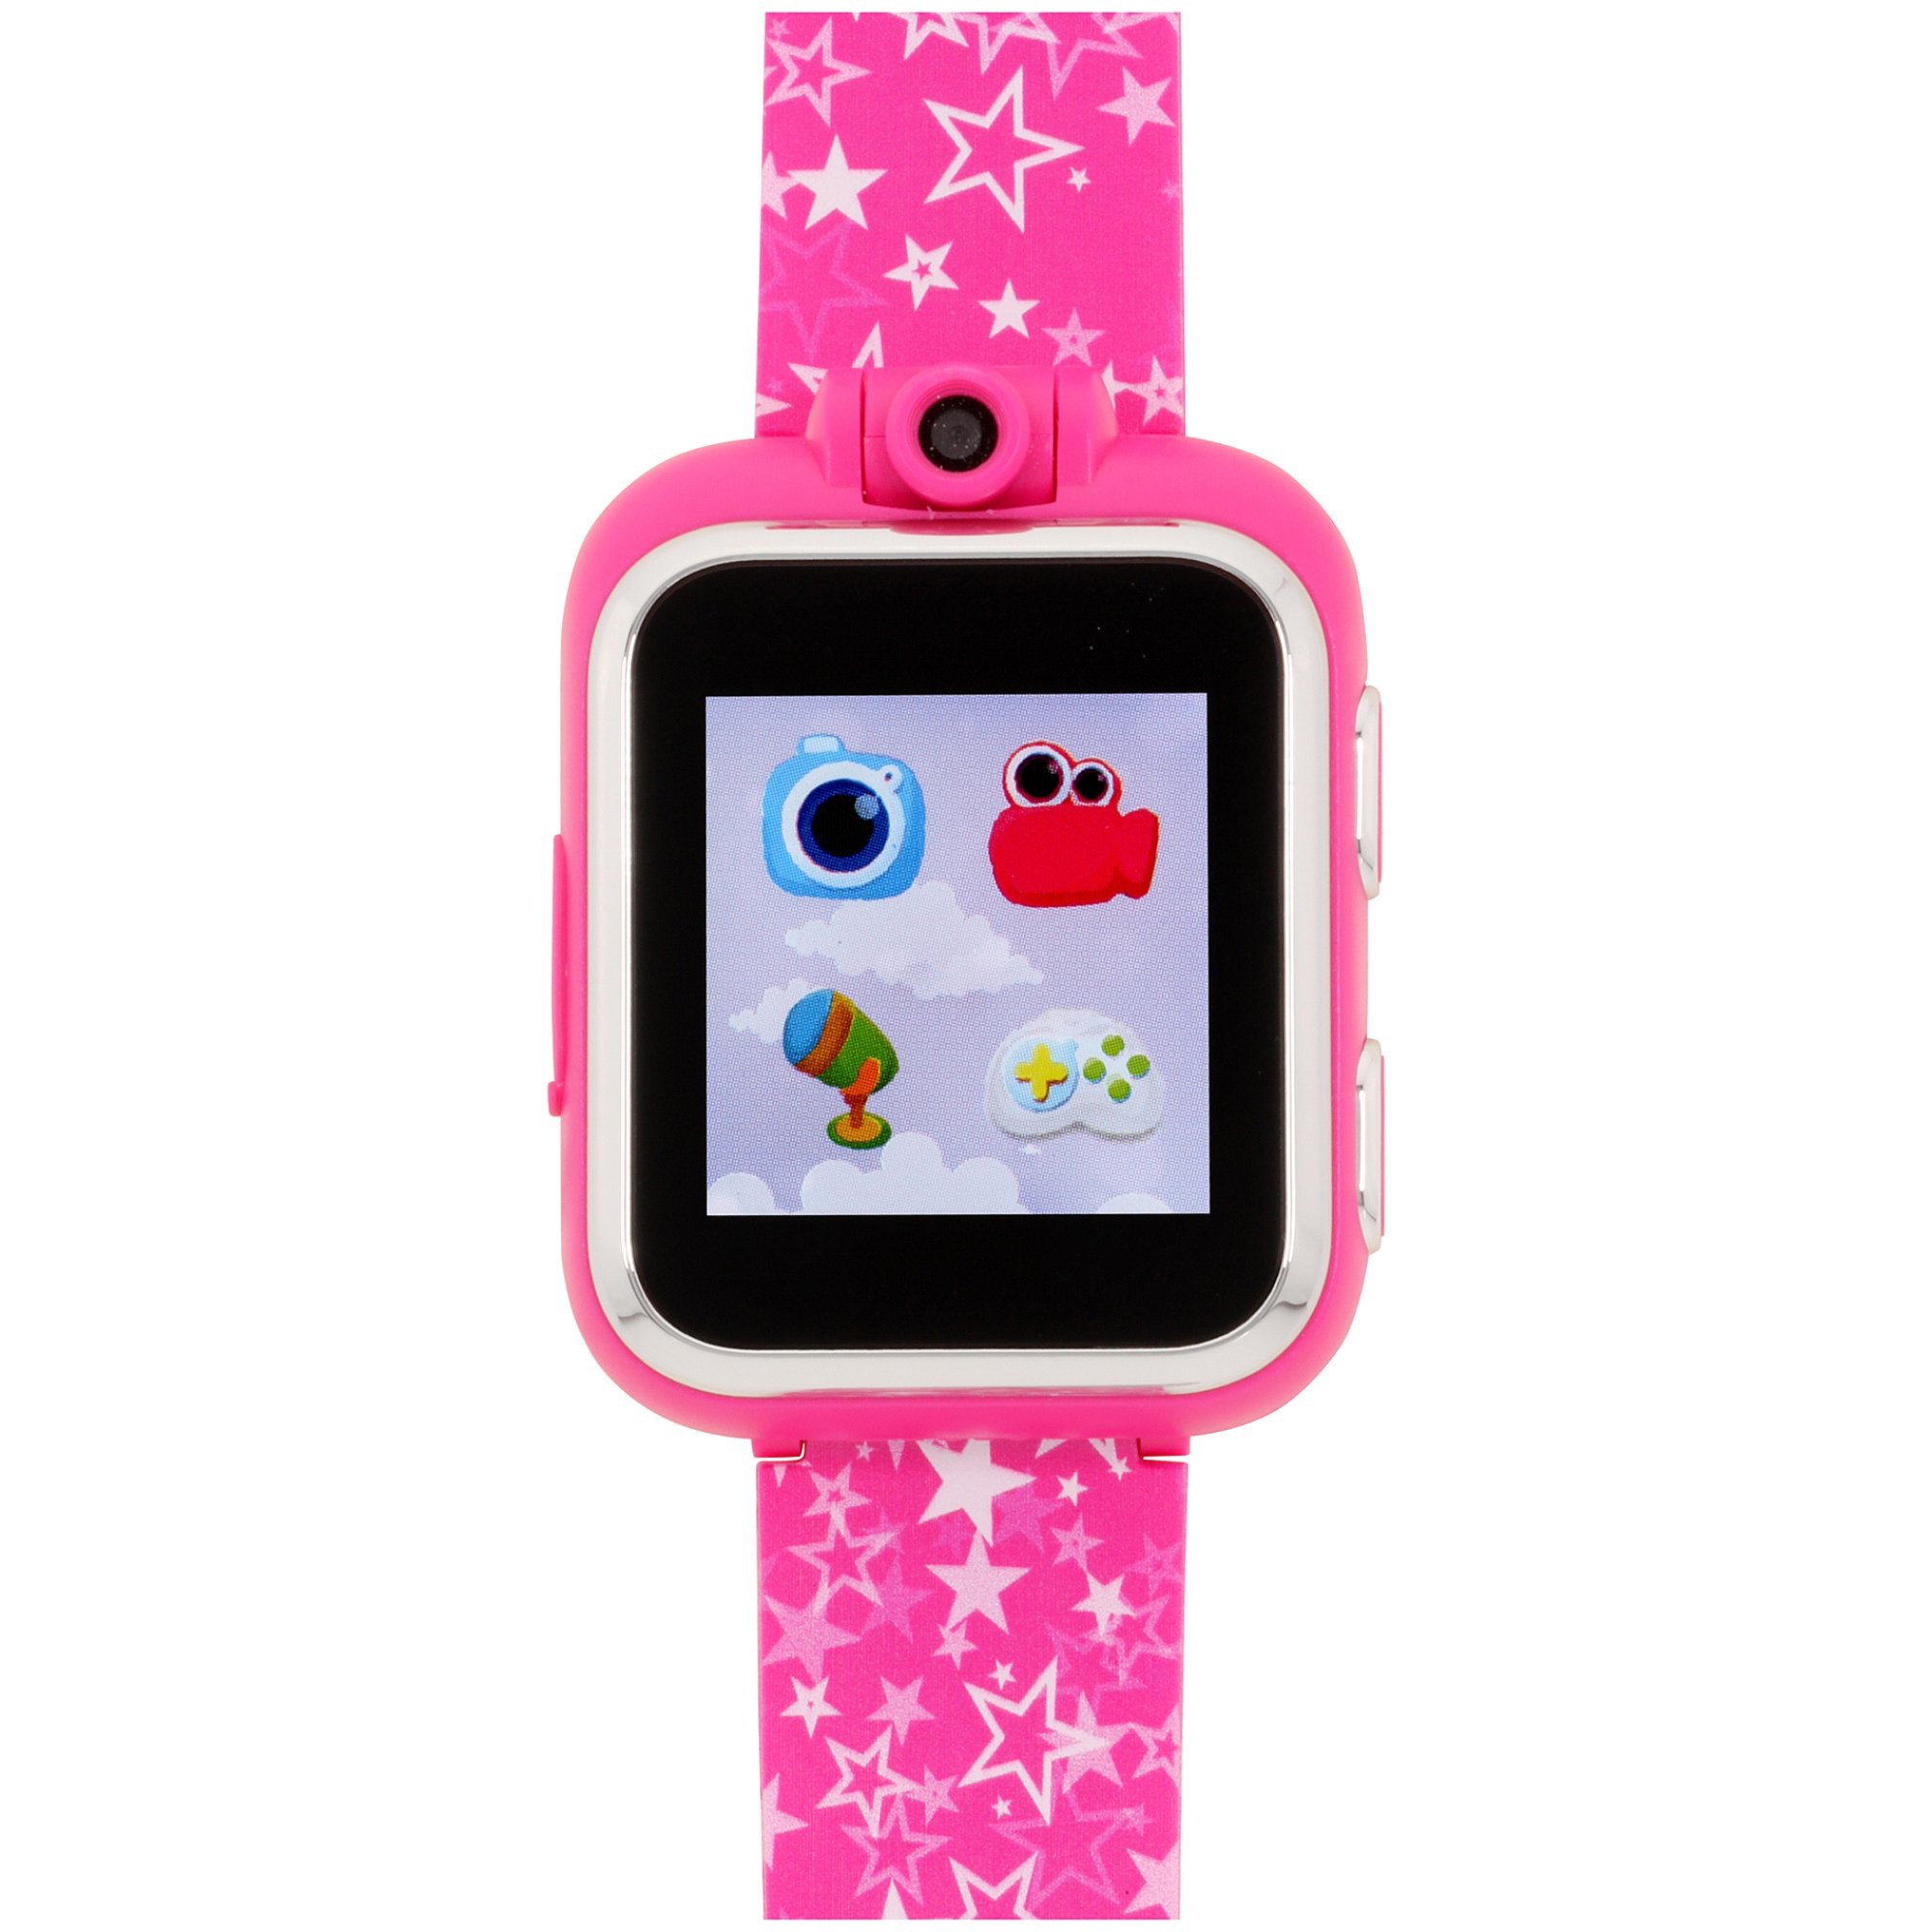 儿童手表 PlayZoom - iTouch Playzoom Kids Smart Watch Purple - Walmart.com - Walmart.com